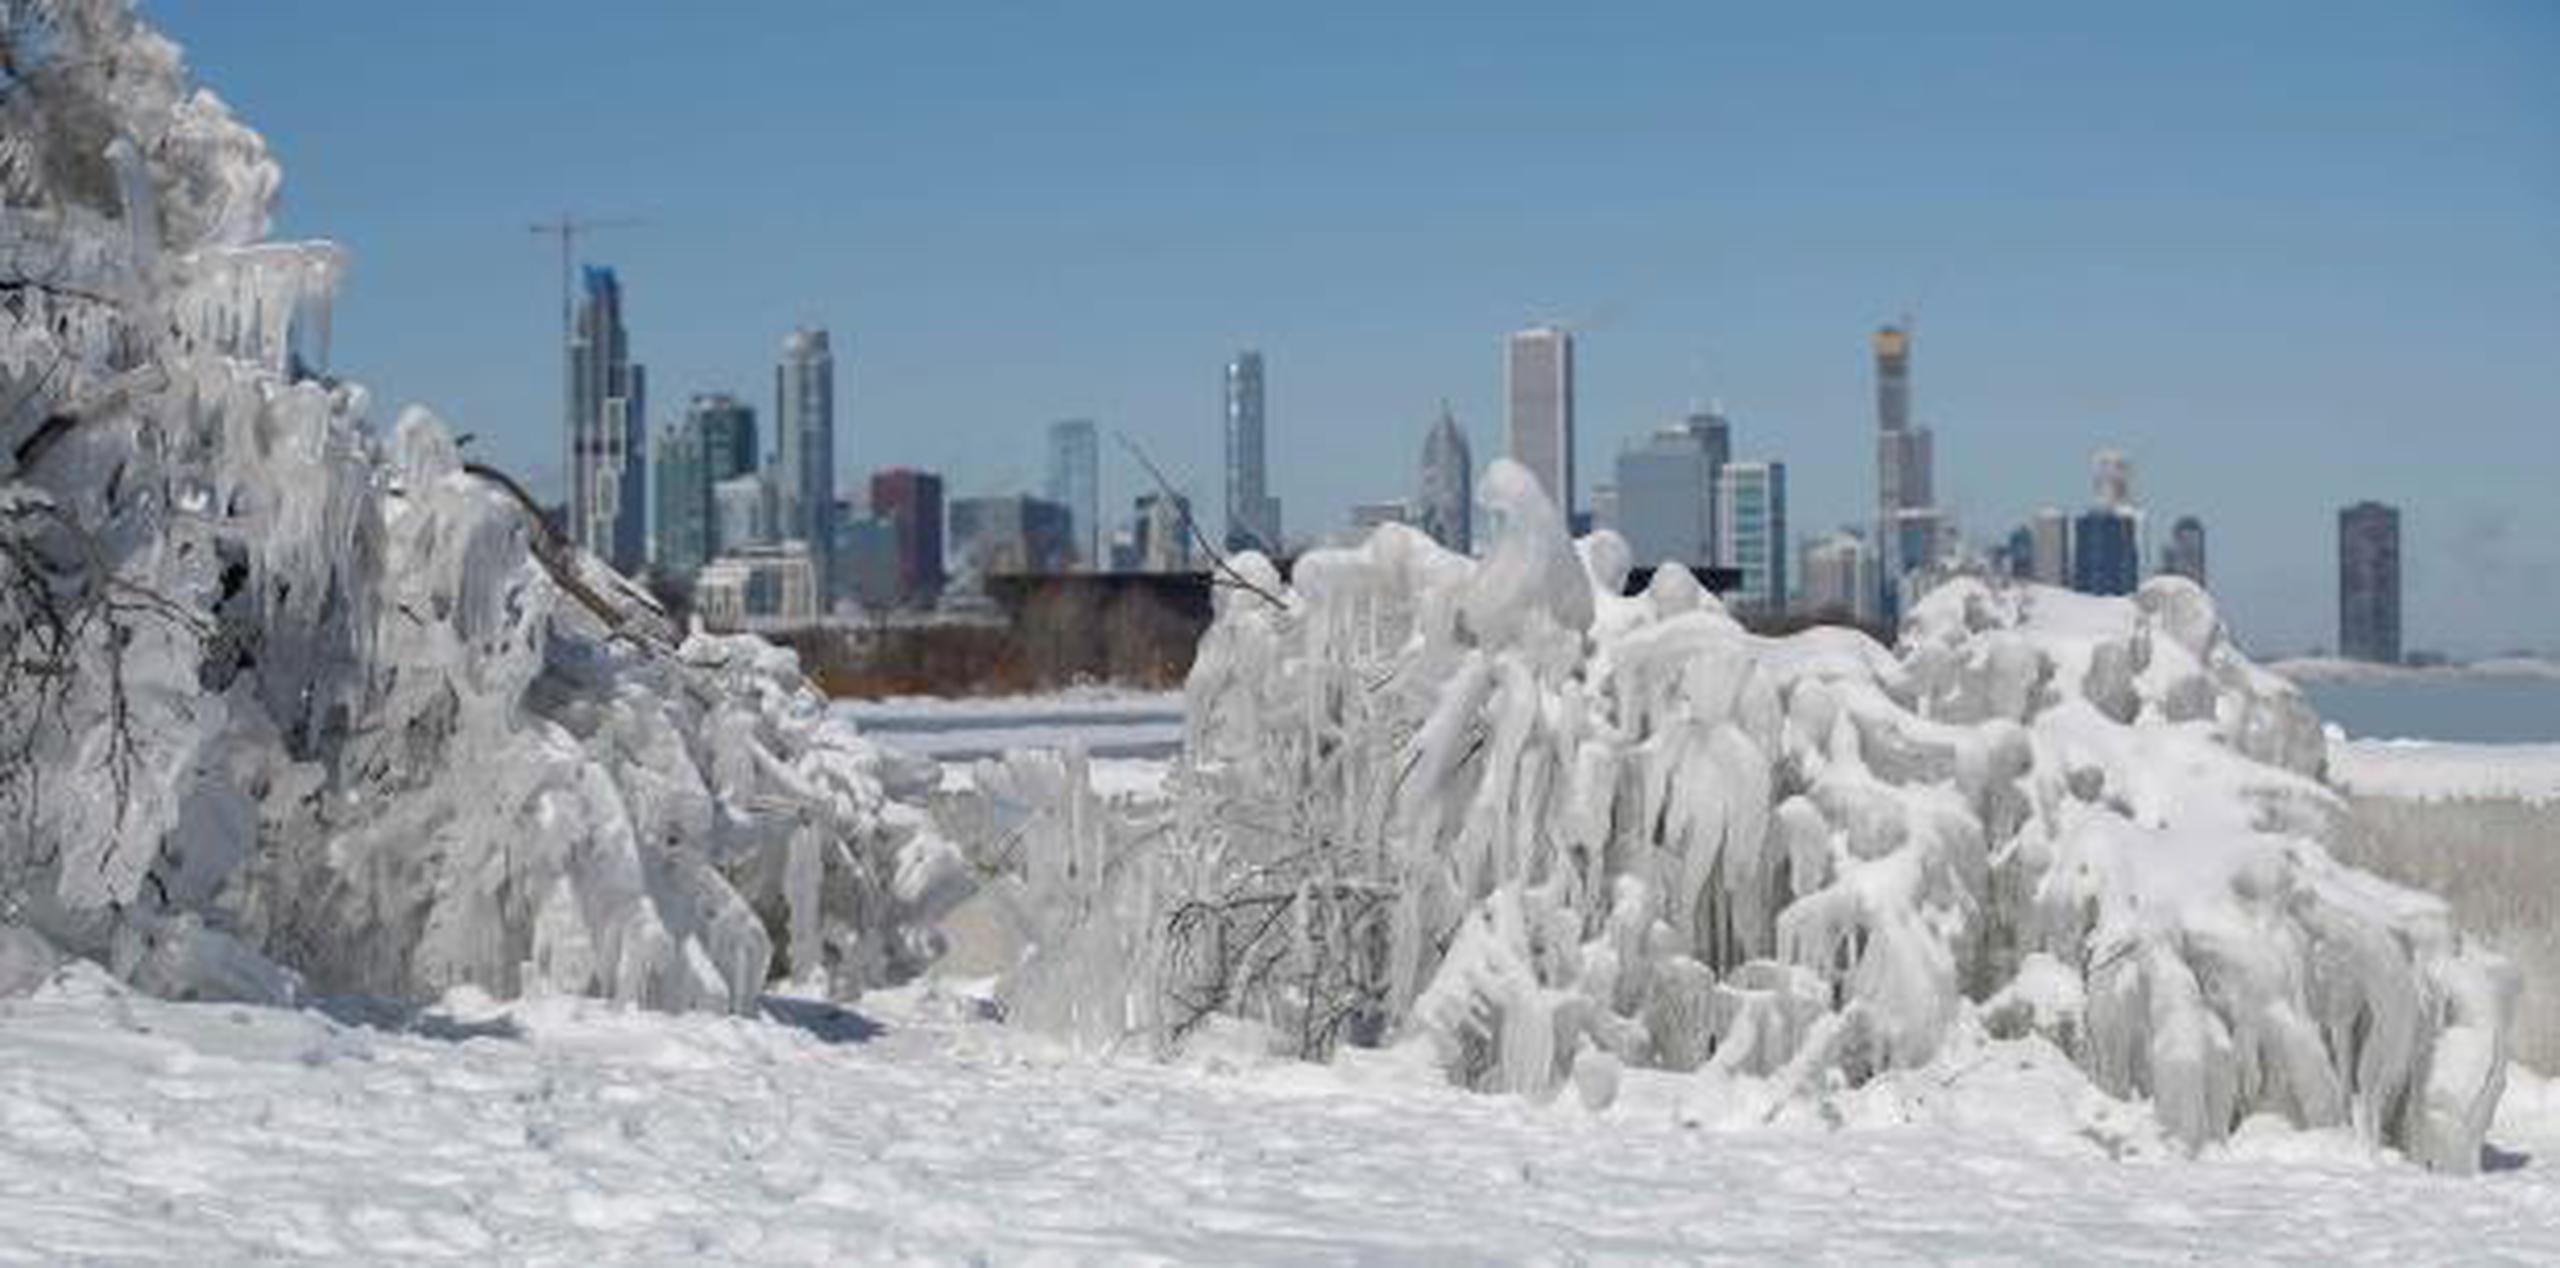 El frío continuaba hoy con registros árticos en Chicago, con un pronóstico de 13 grados Fahrenheit bajo cero durante el día. (EFE)